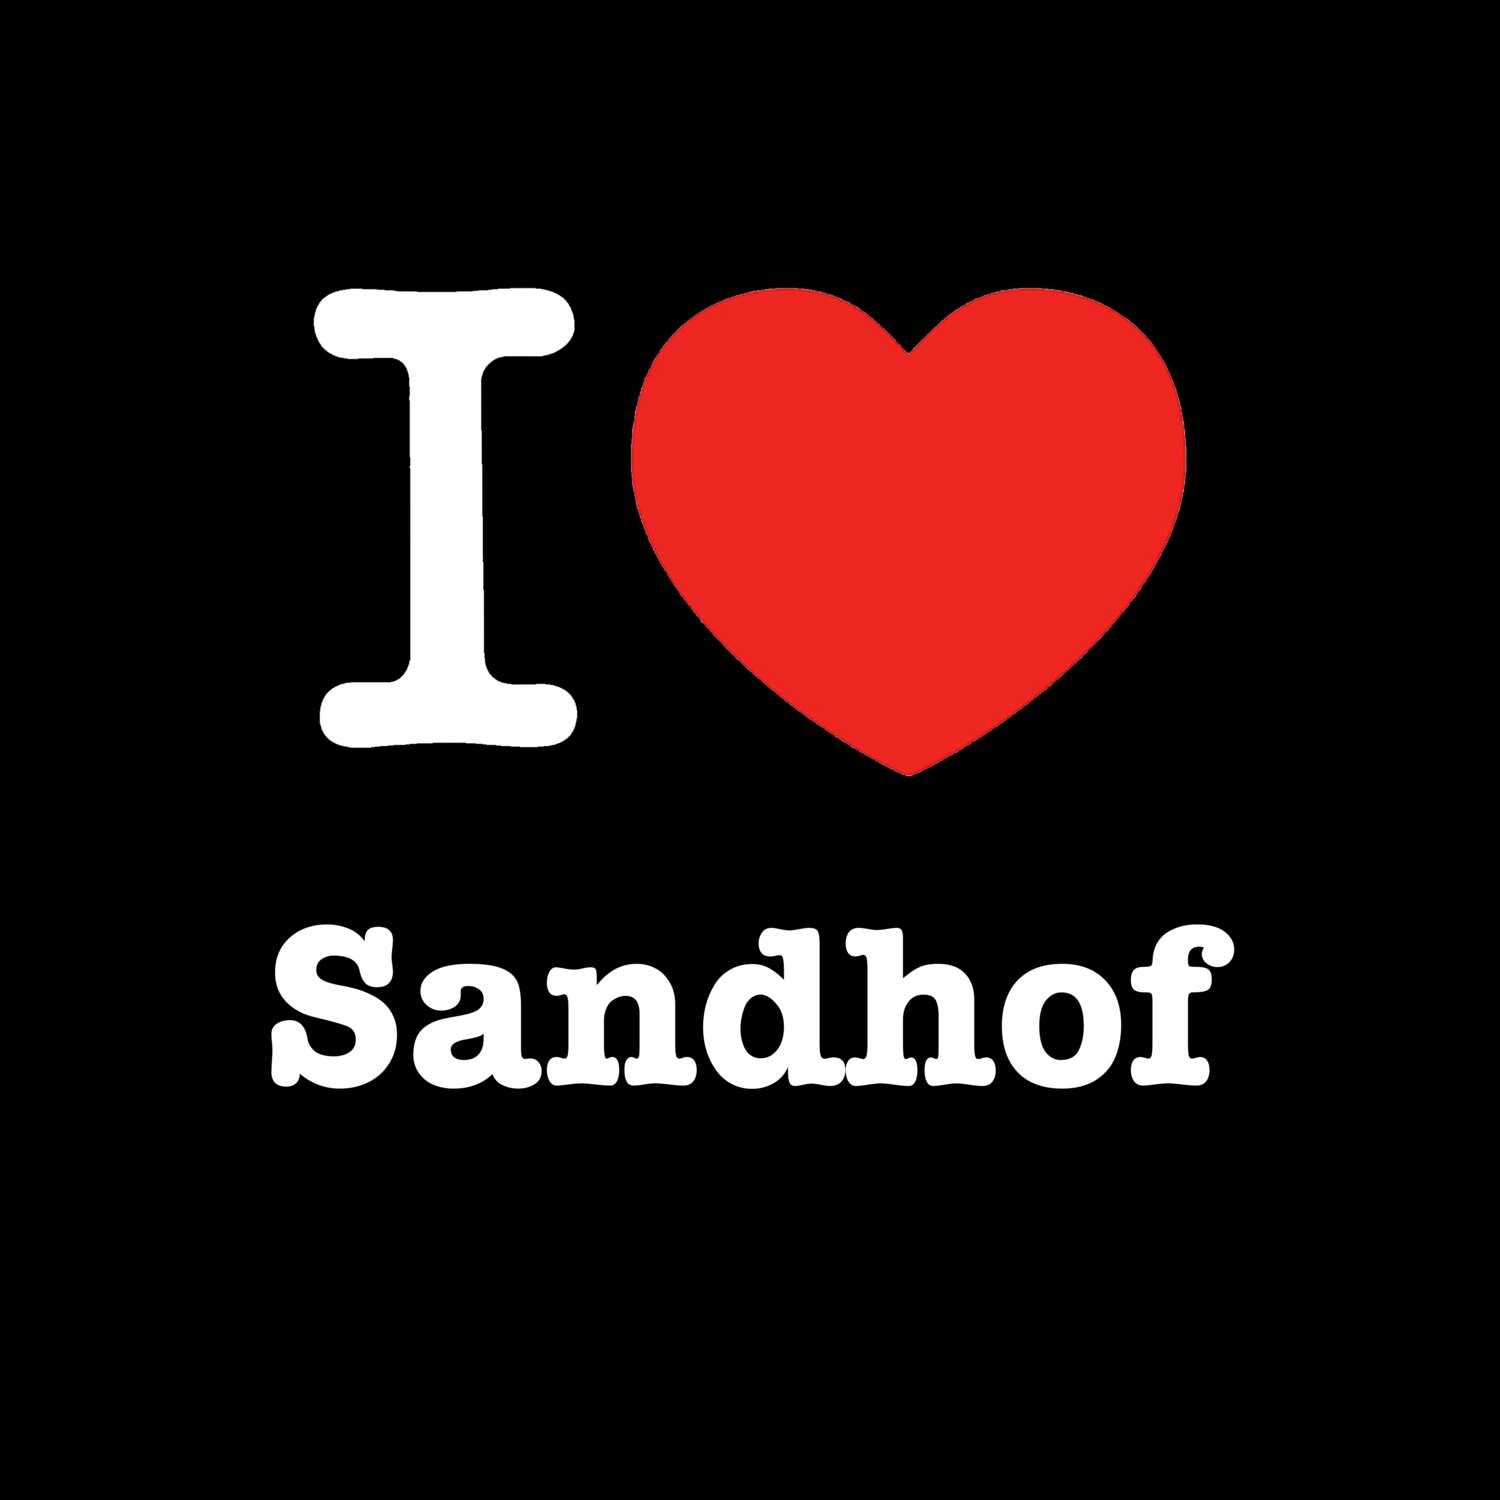 Sandhof T-Shirt »I love«